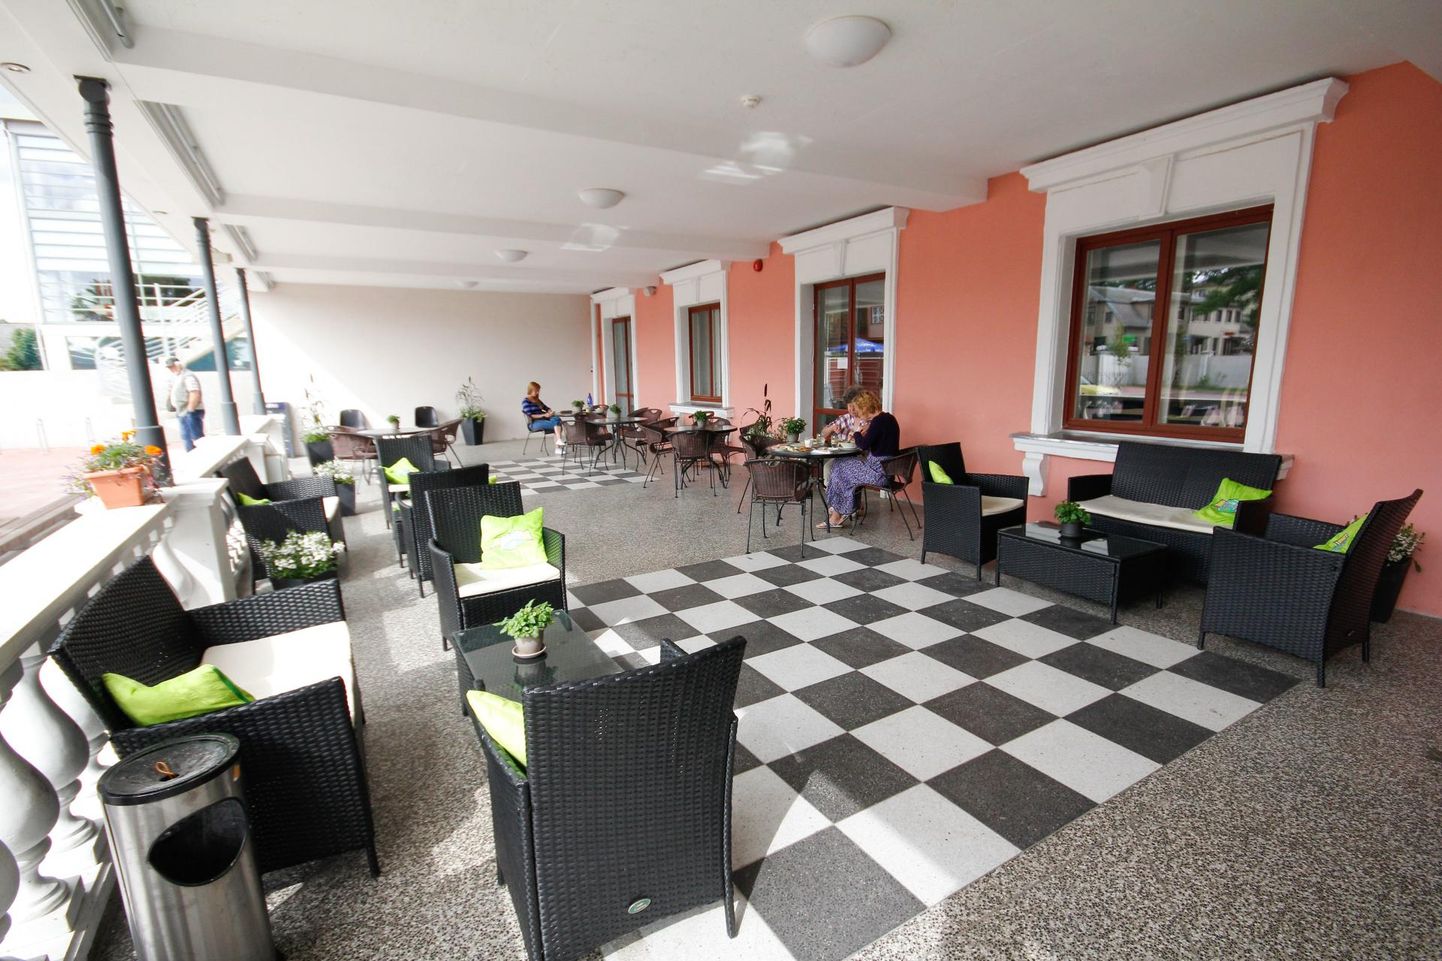 Sakala ruumides tegutsenud kohvikut Harmoonia pidav ettevõte hakkab mõisahoones pidama restorani Schloss.